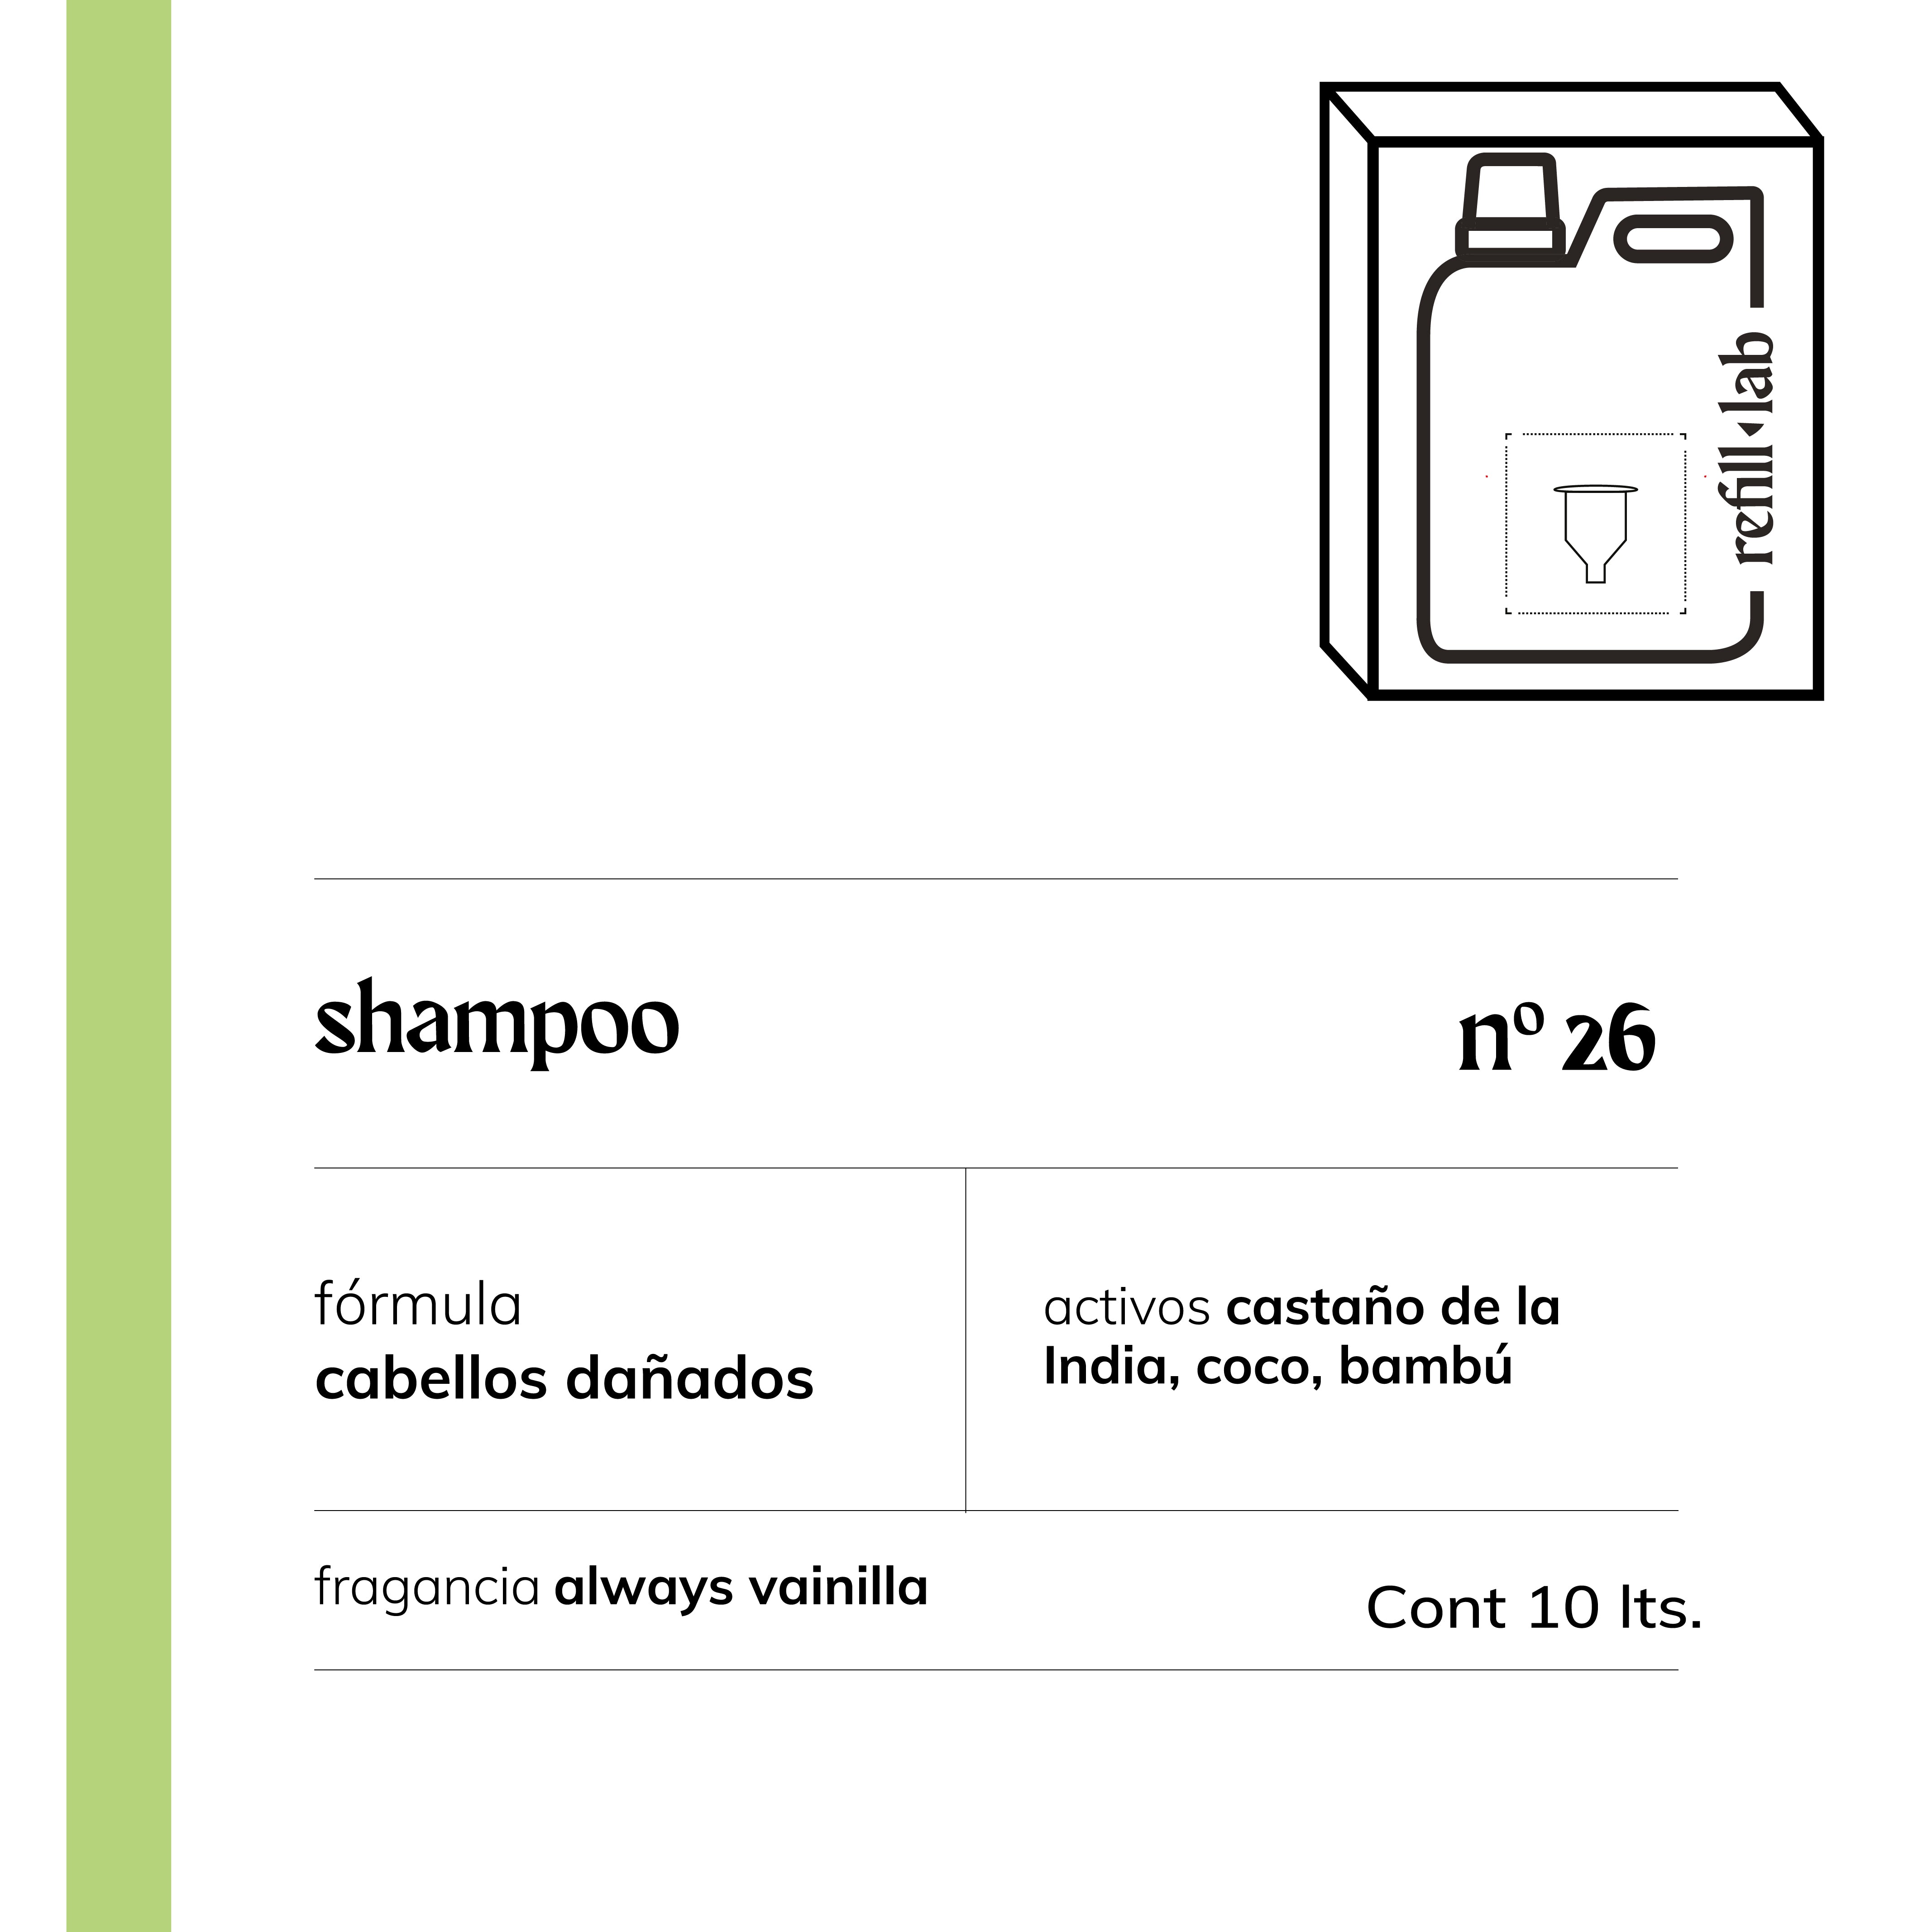 Shampoo sin sulfatos - Cabellos Dañados/Teñidos - Always Vainilla - 10 lts.